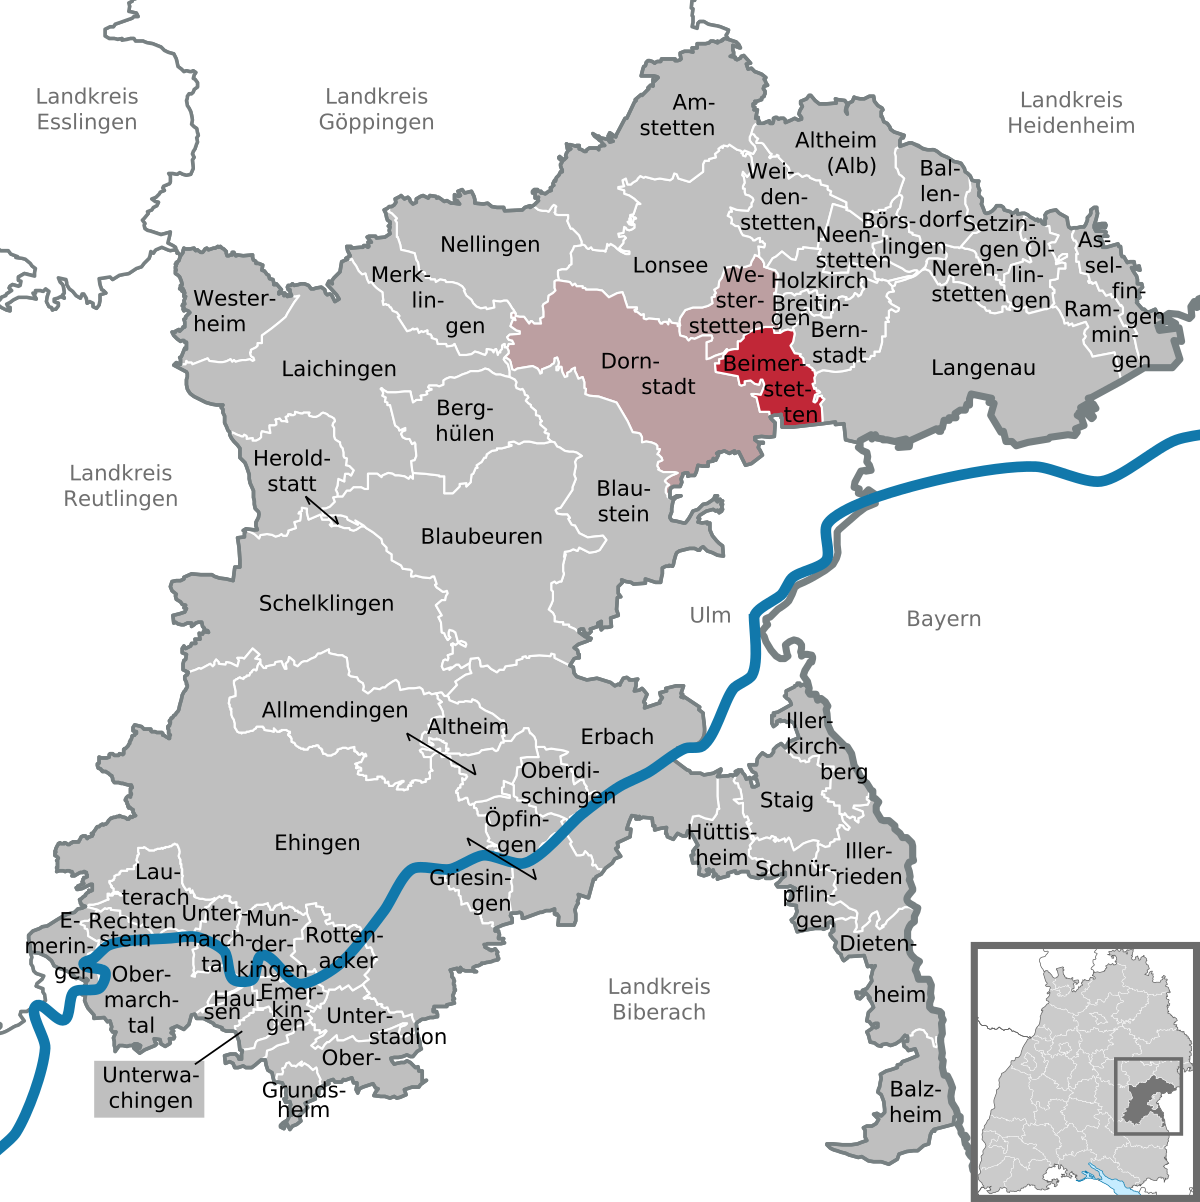 Straube's Karte der Umgegend von Berlin.』Entfernungsagaben in Kilometern  von Ort zu Ort. ※ベルリン・ドイツ 13万分の1図 02217 - その他